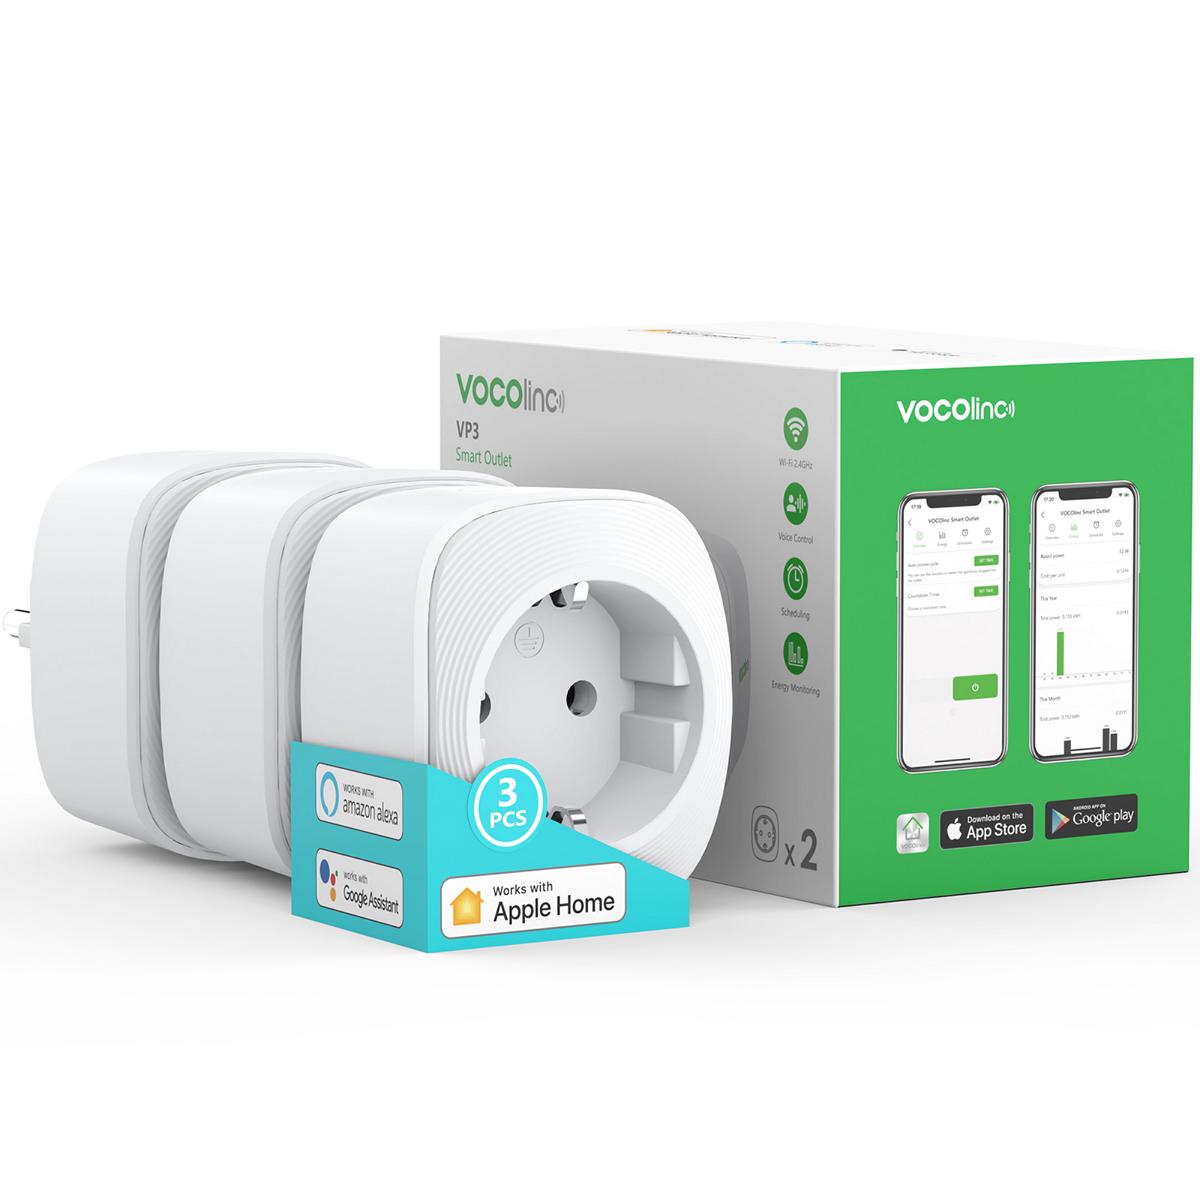 VOCOlinc Multifunction Smart Plug -VP3-1 Pack